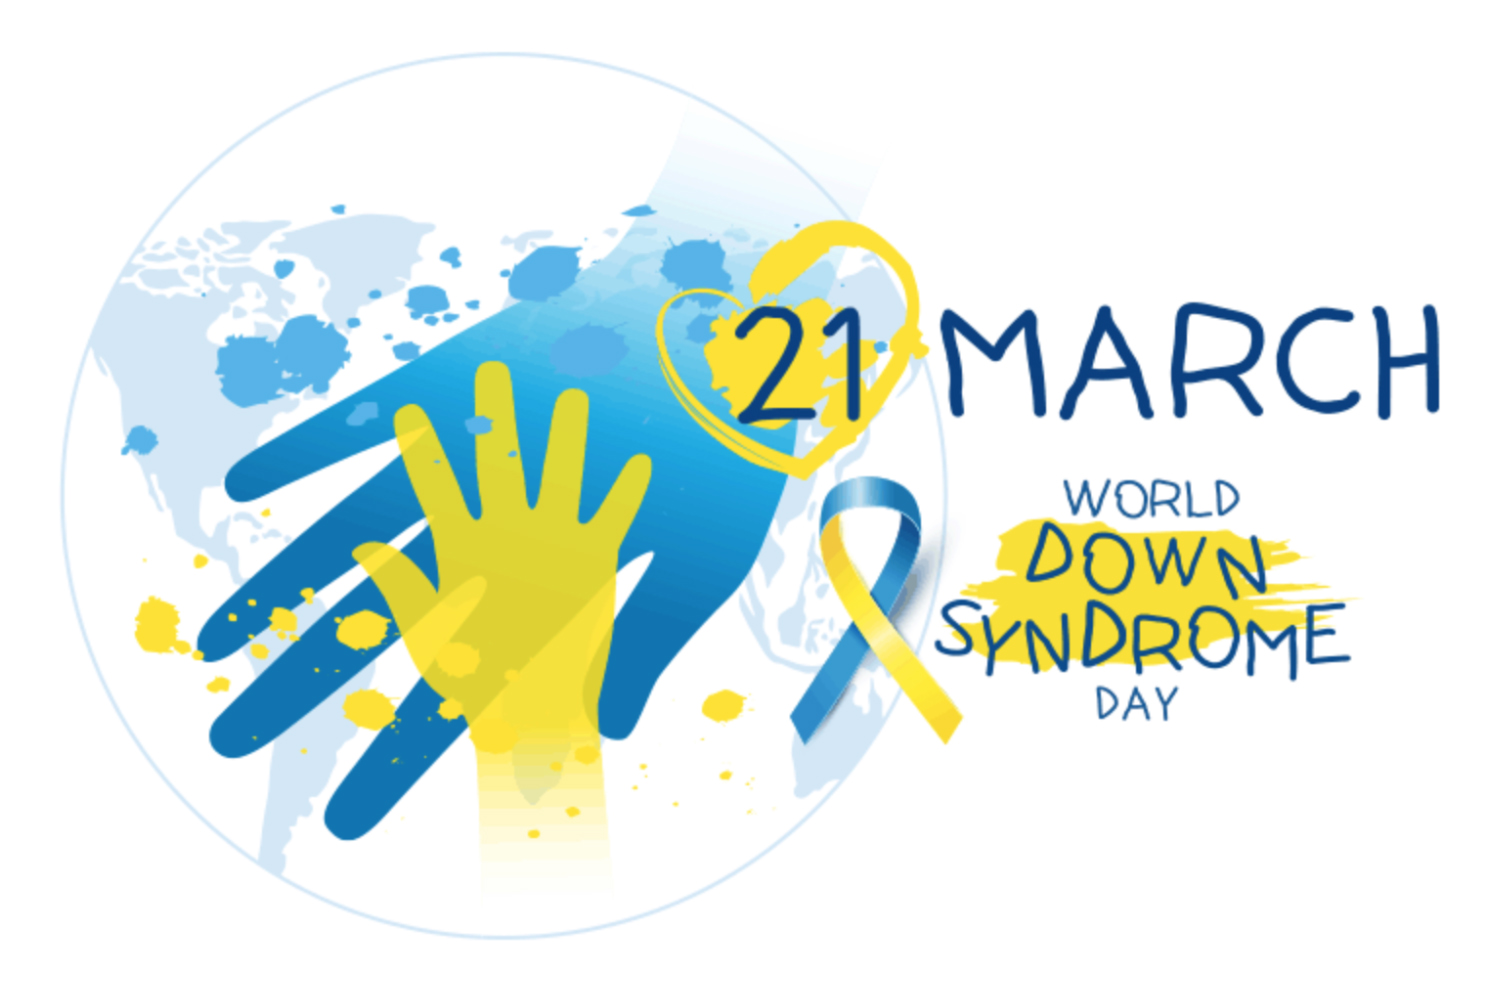 Perché è fondamentale ricordare che oggi è la Giornata Mondiale per la Sindrome di Down 1